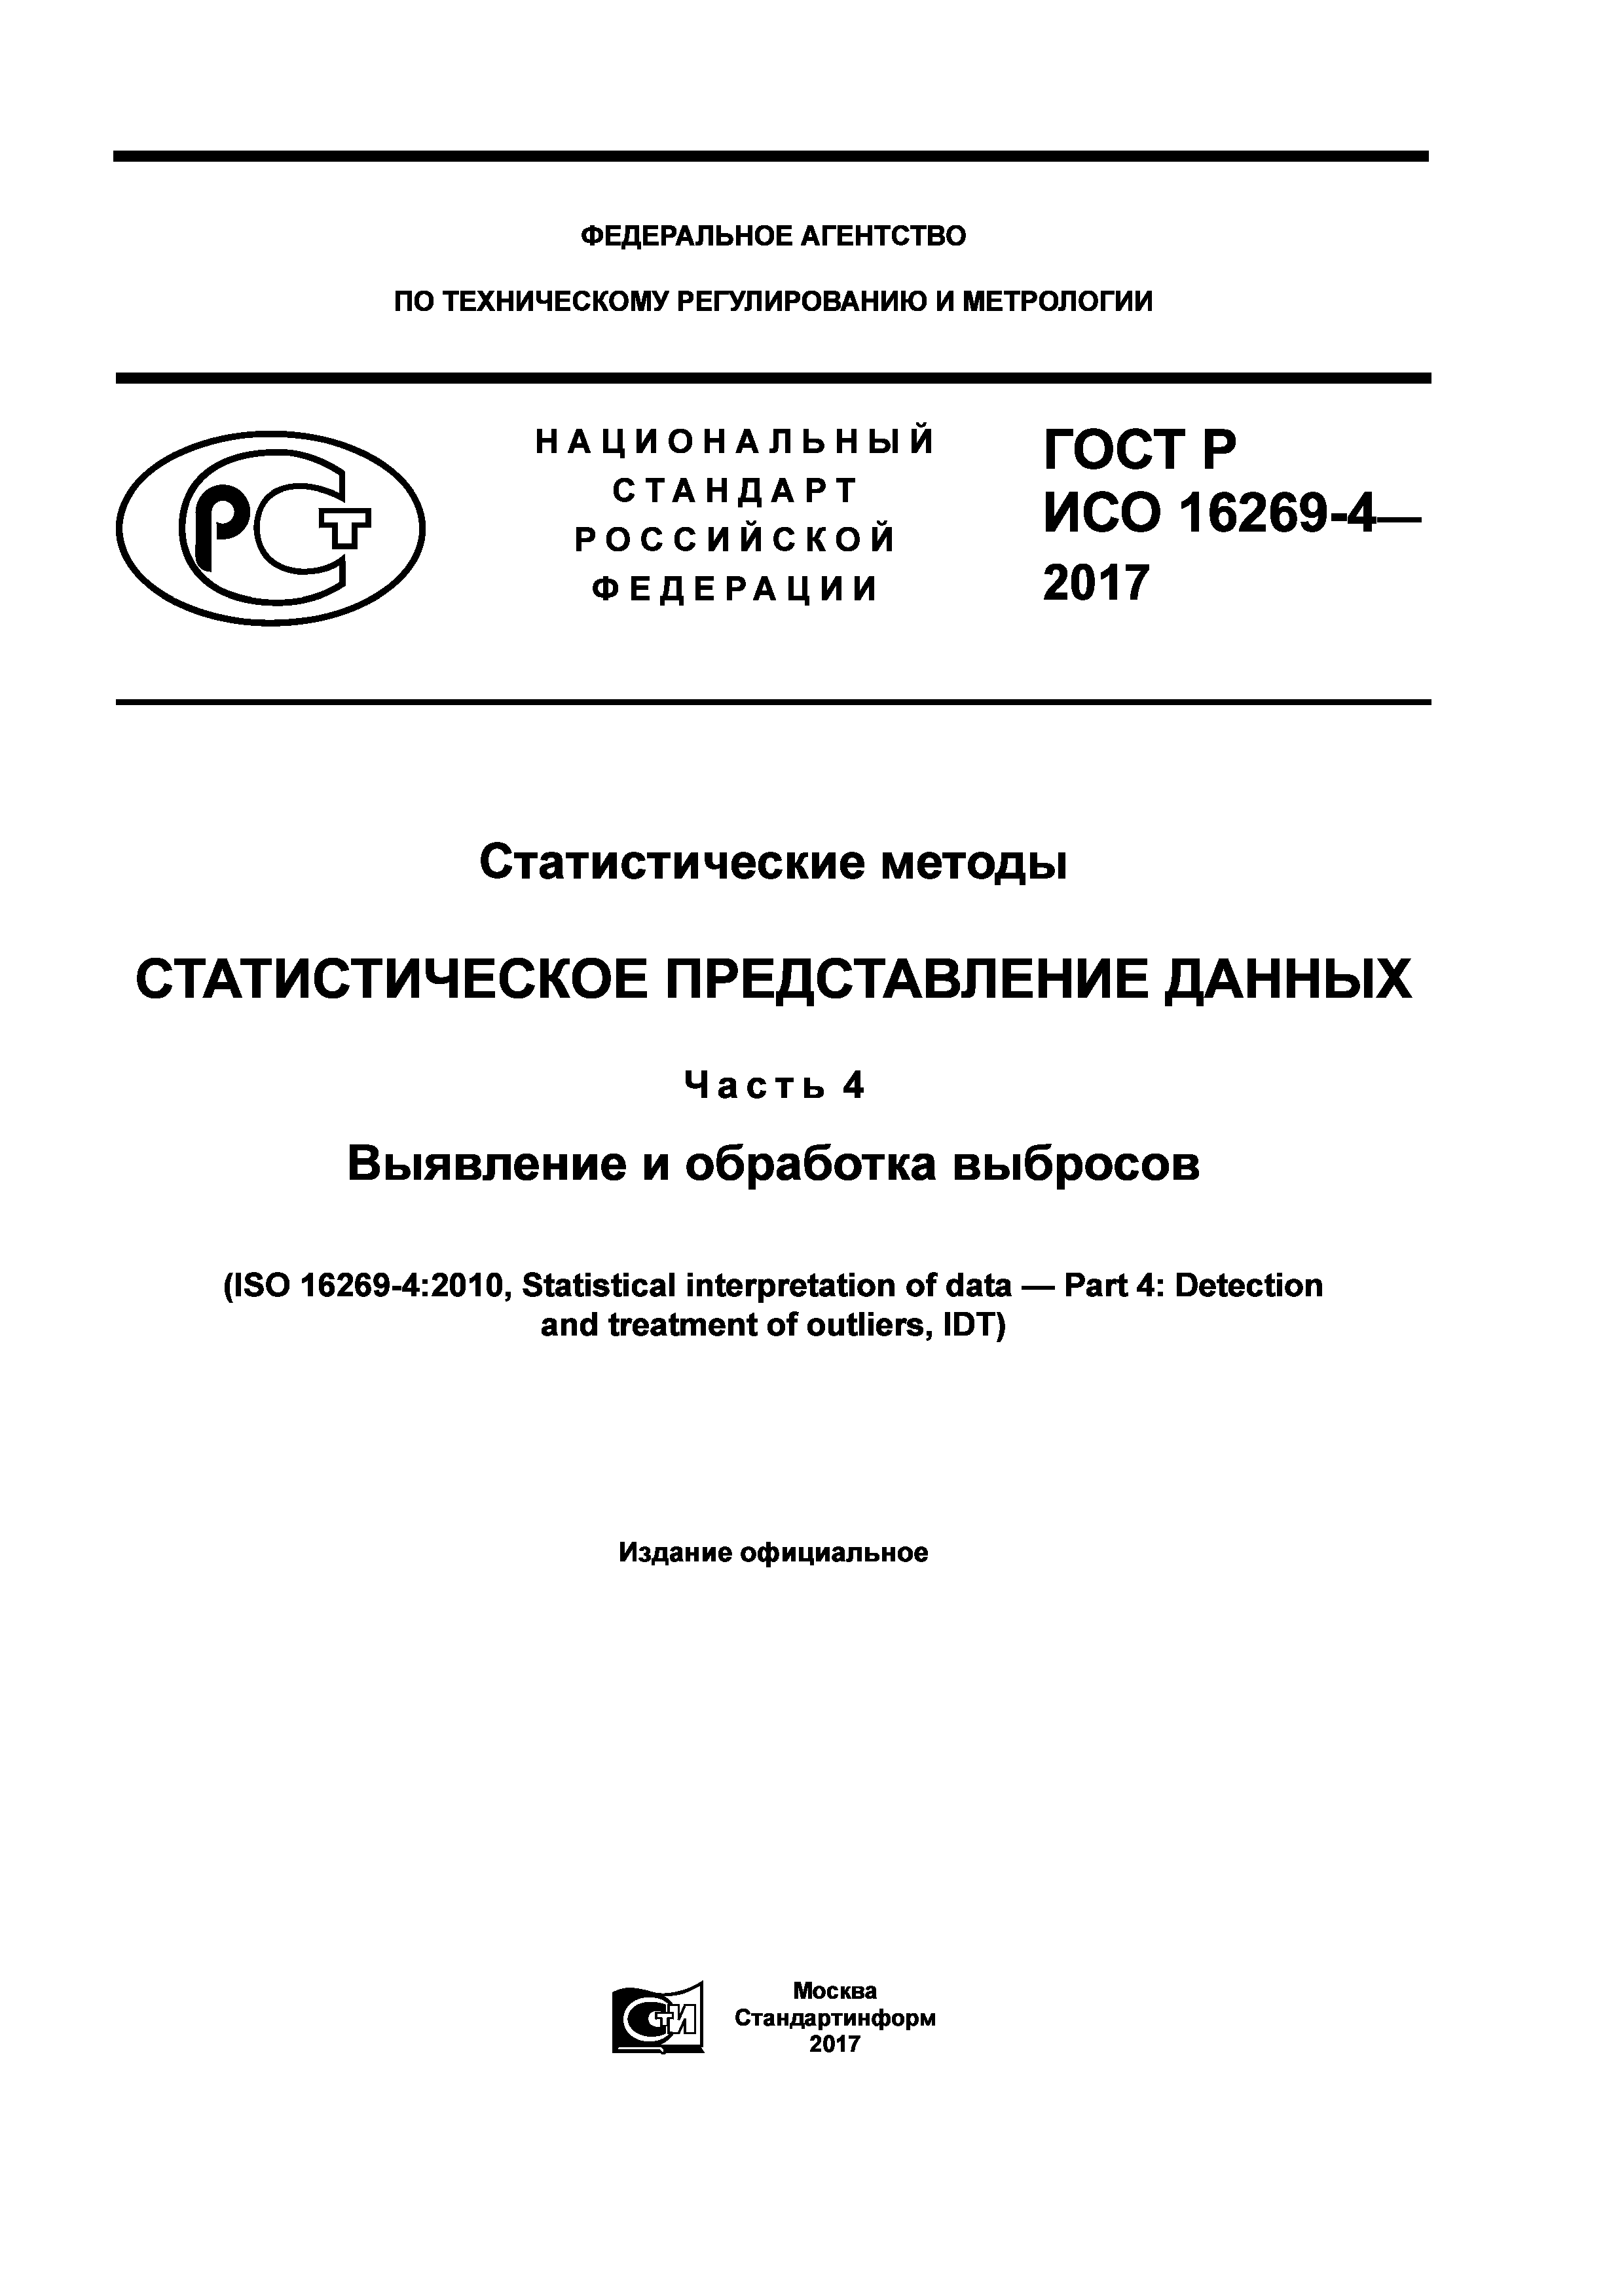 ГОСТ Р ИСО 16269-4-2017